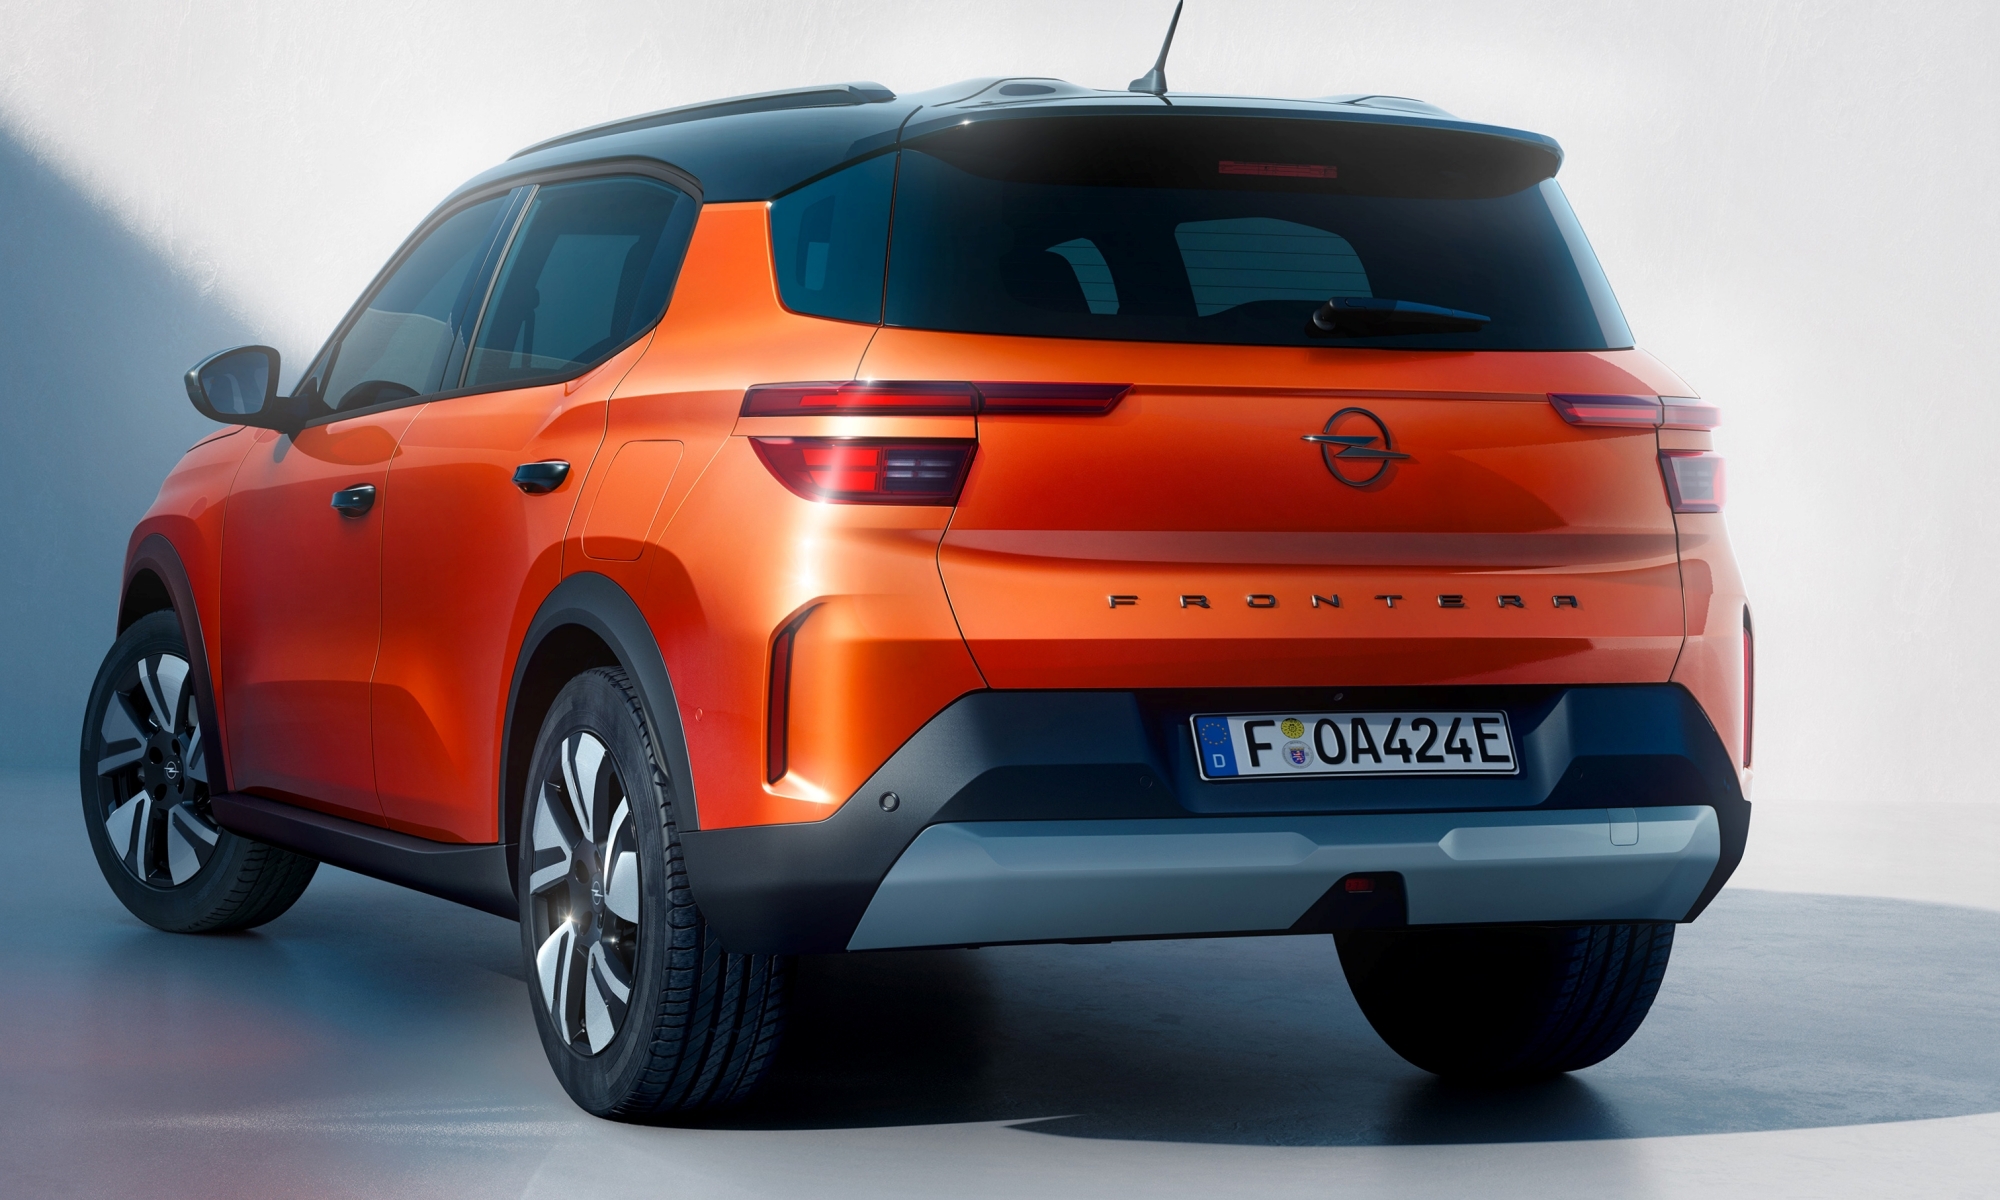 El nuevo Opel Frontera estará disponible con 7 plazas, aunque más adelante.